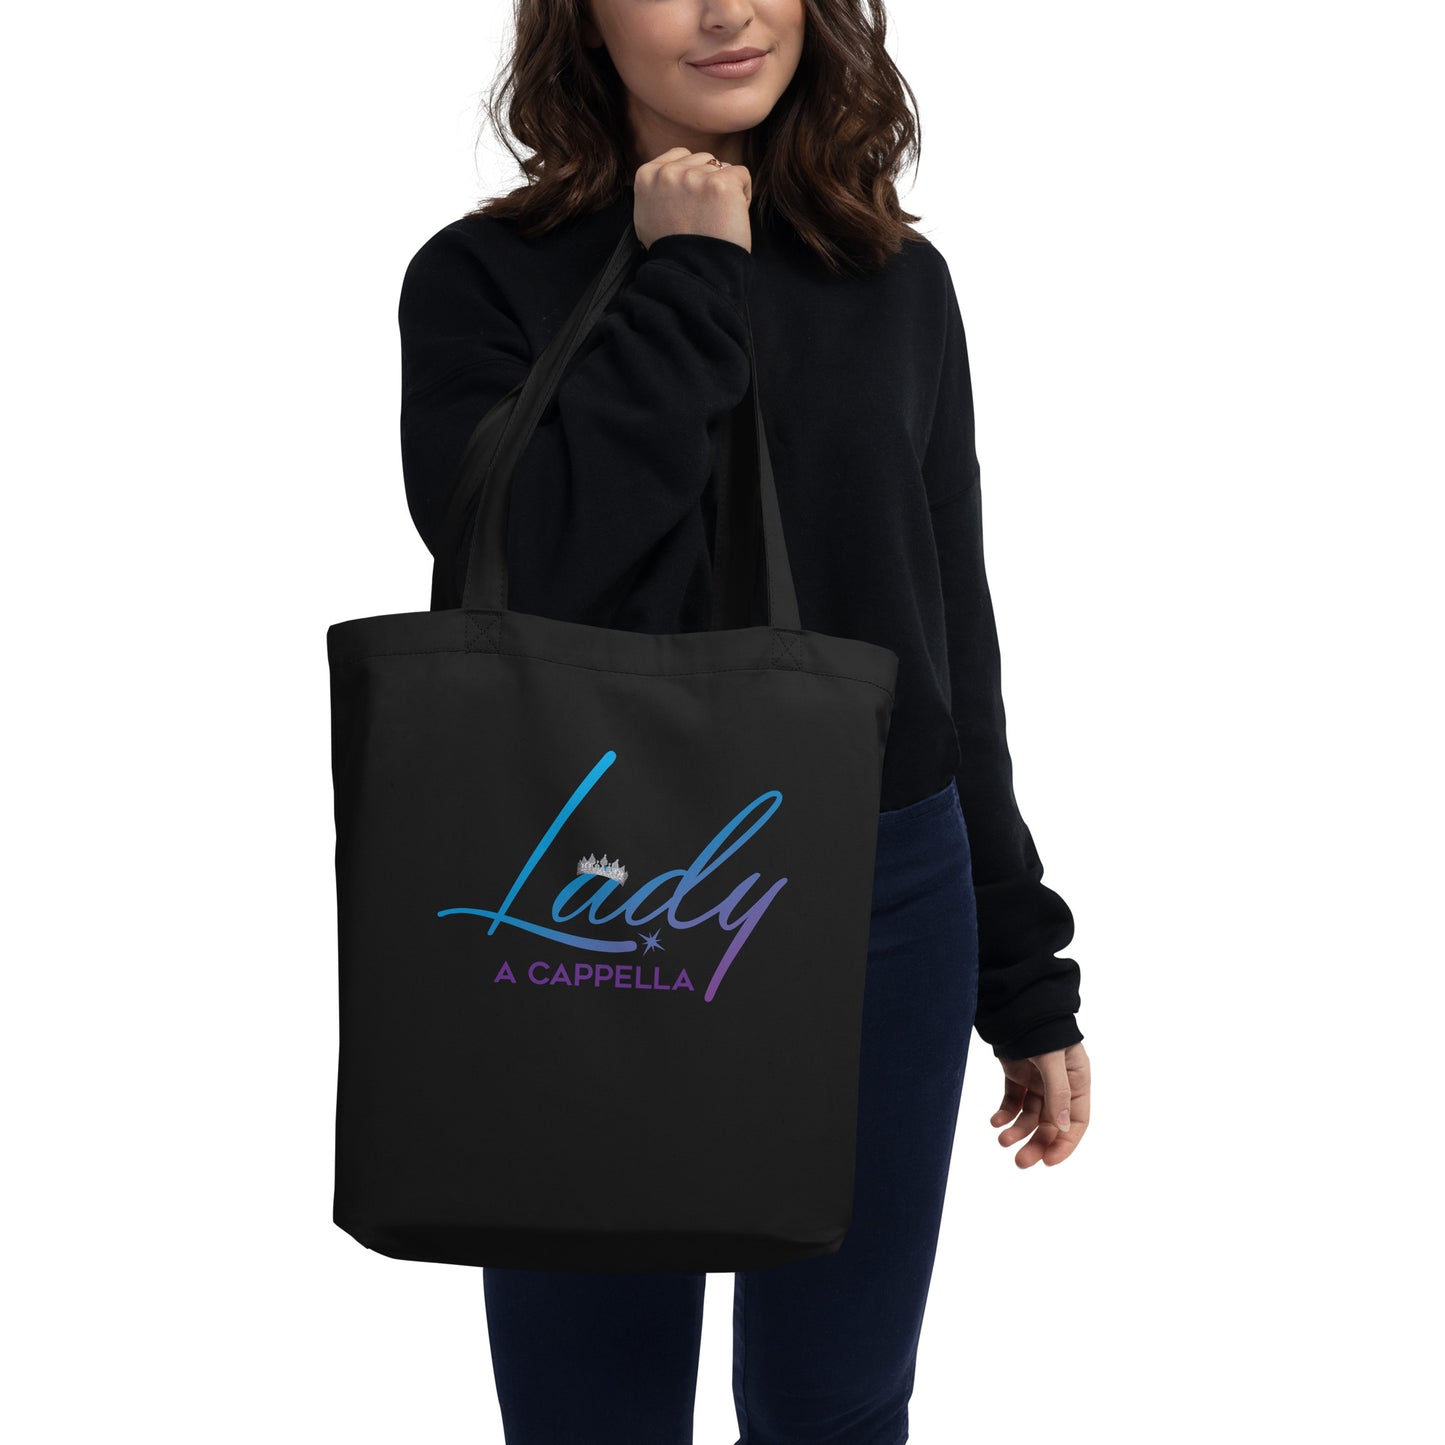 Lady A Cappella -  Tote Bag